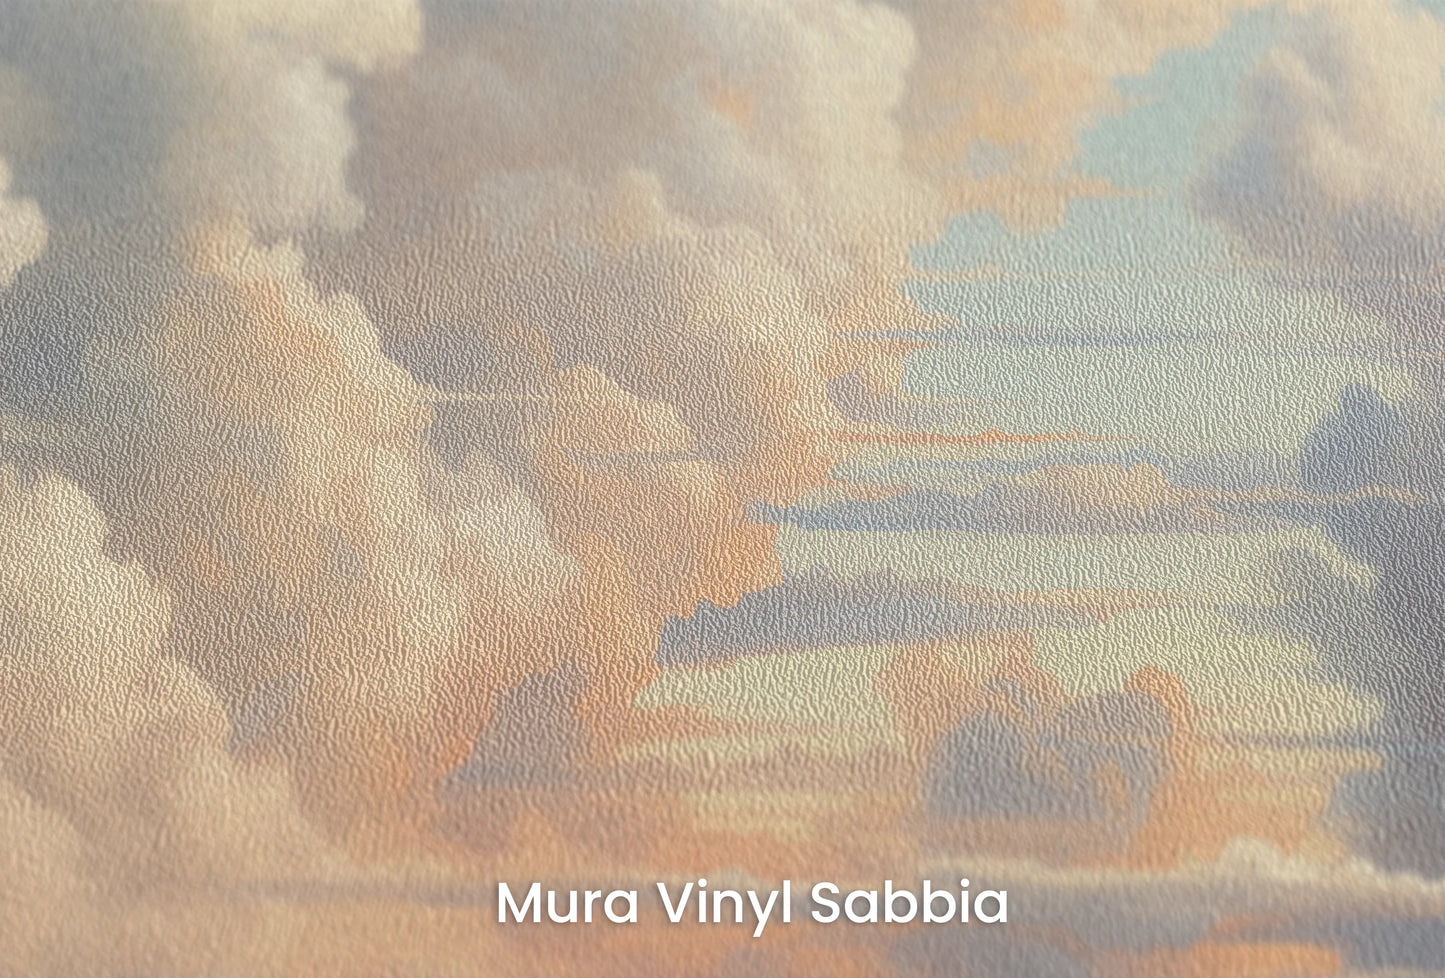 Zbliżenie na artystyczną fototapetę o nazwie Skies Ablaze na podłożu Mura Vinyl Sabbia struktura grubego ziarna piasku.